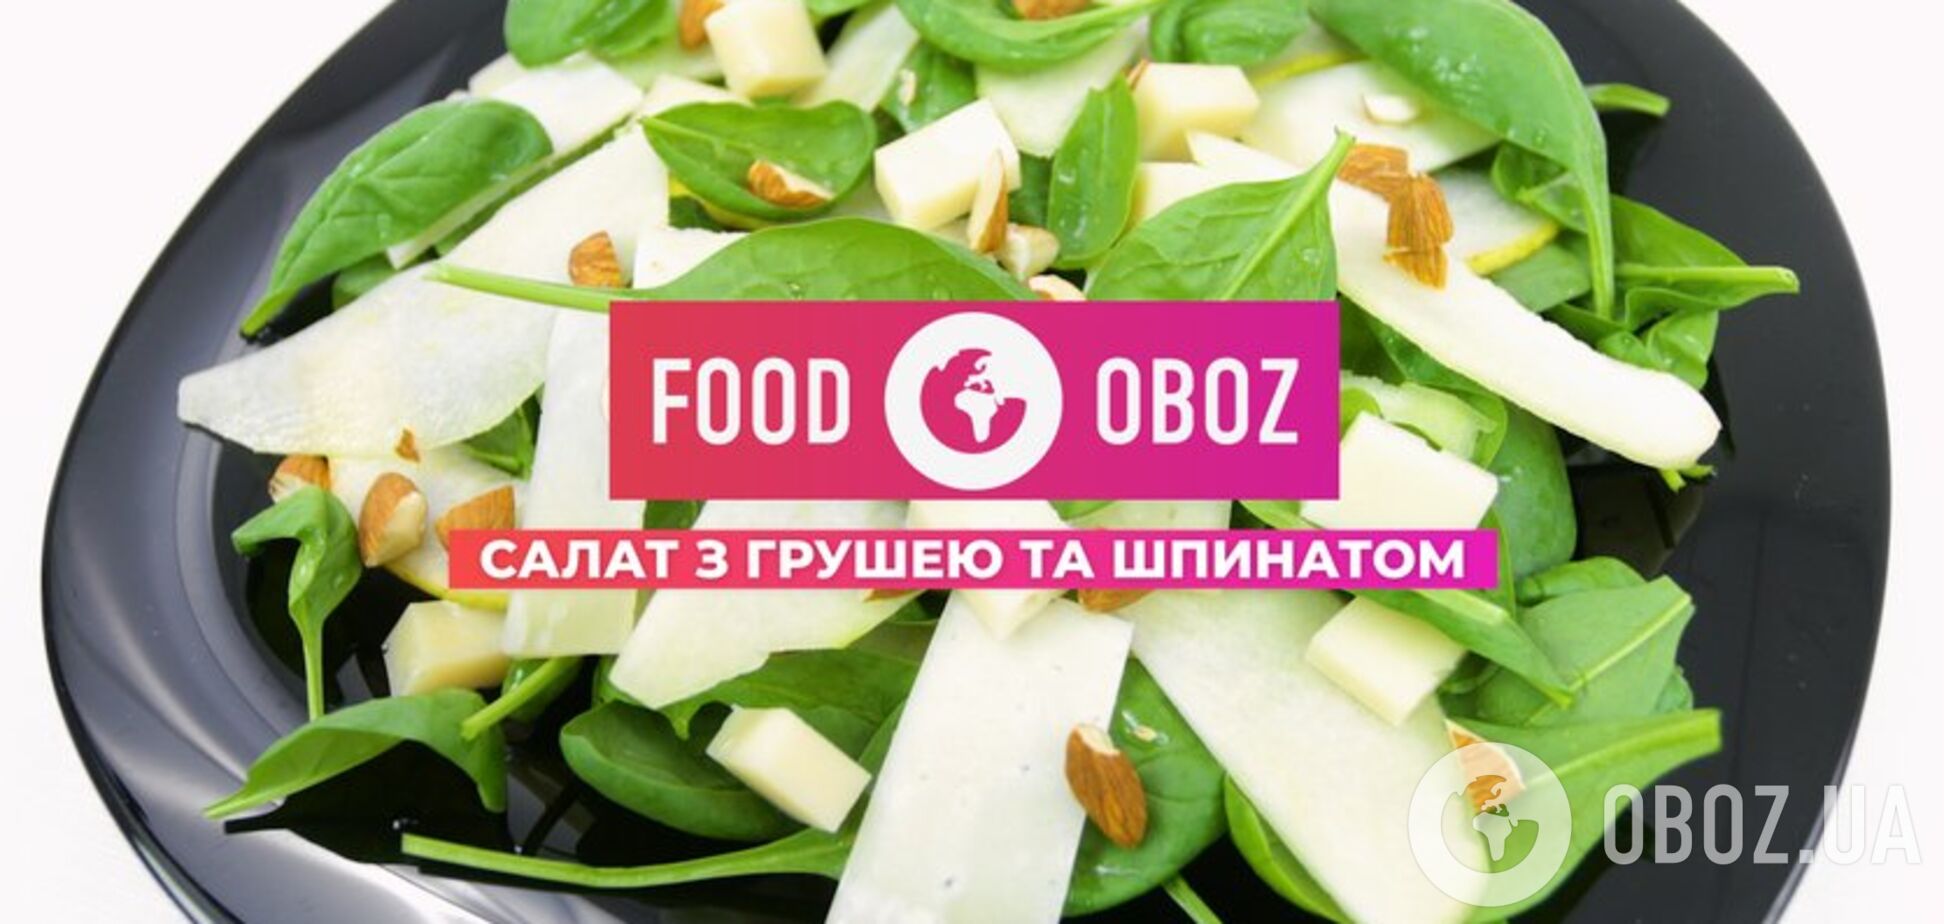 FOODOBOZ | Салат с грушей и шпинатом